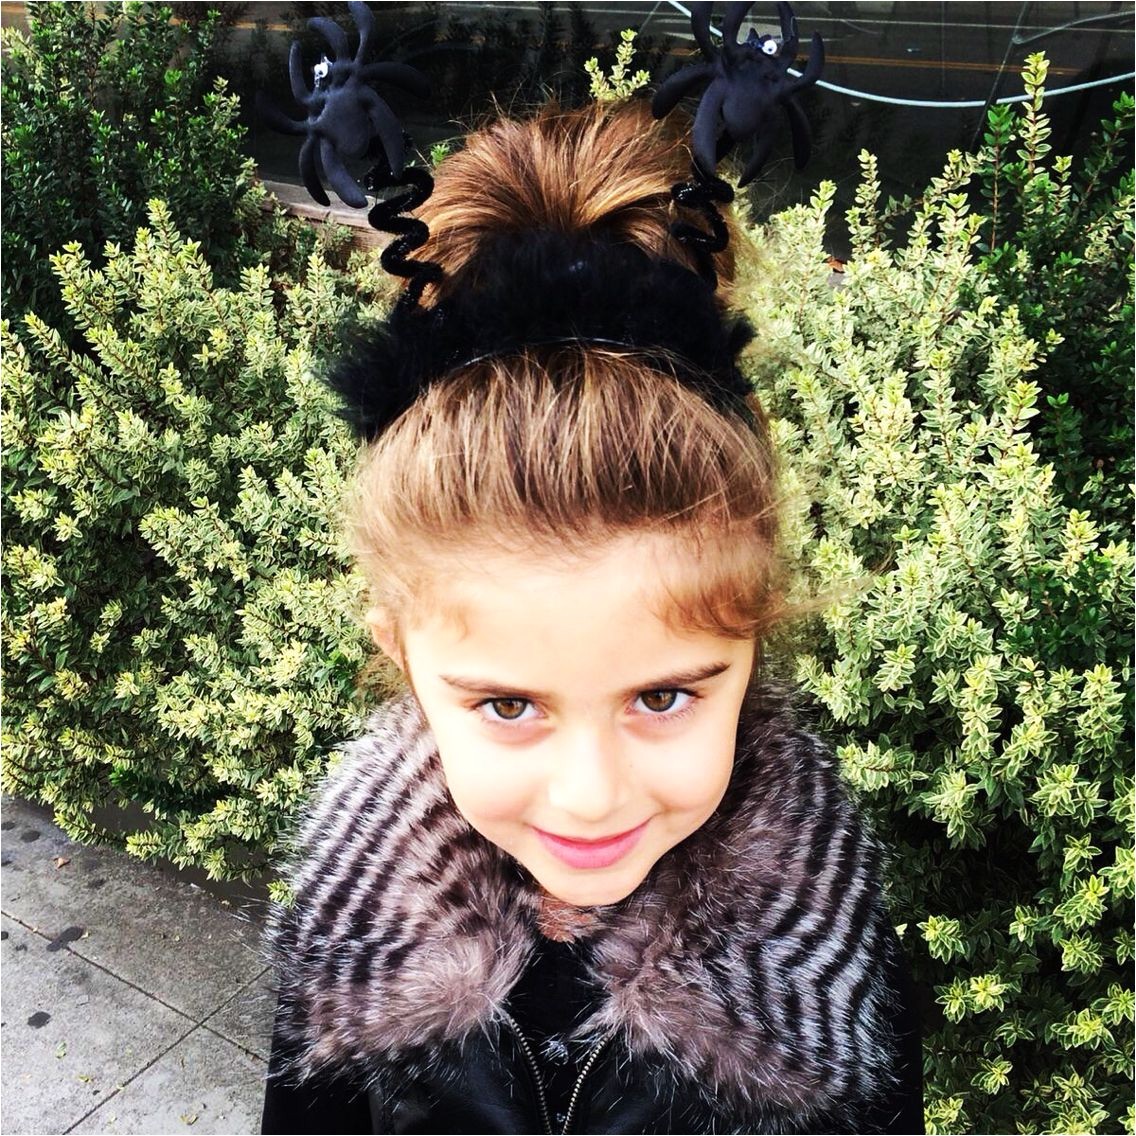 Spooky little girl hair with spiders and a high bun scrunchie littlegirlhair halloween